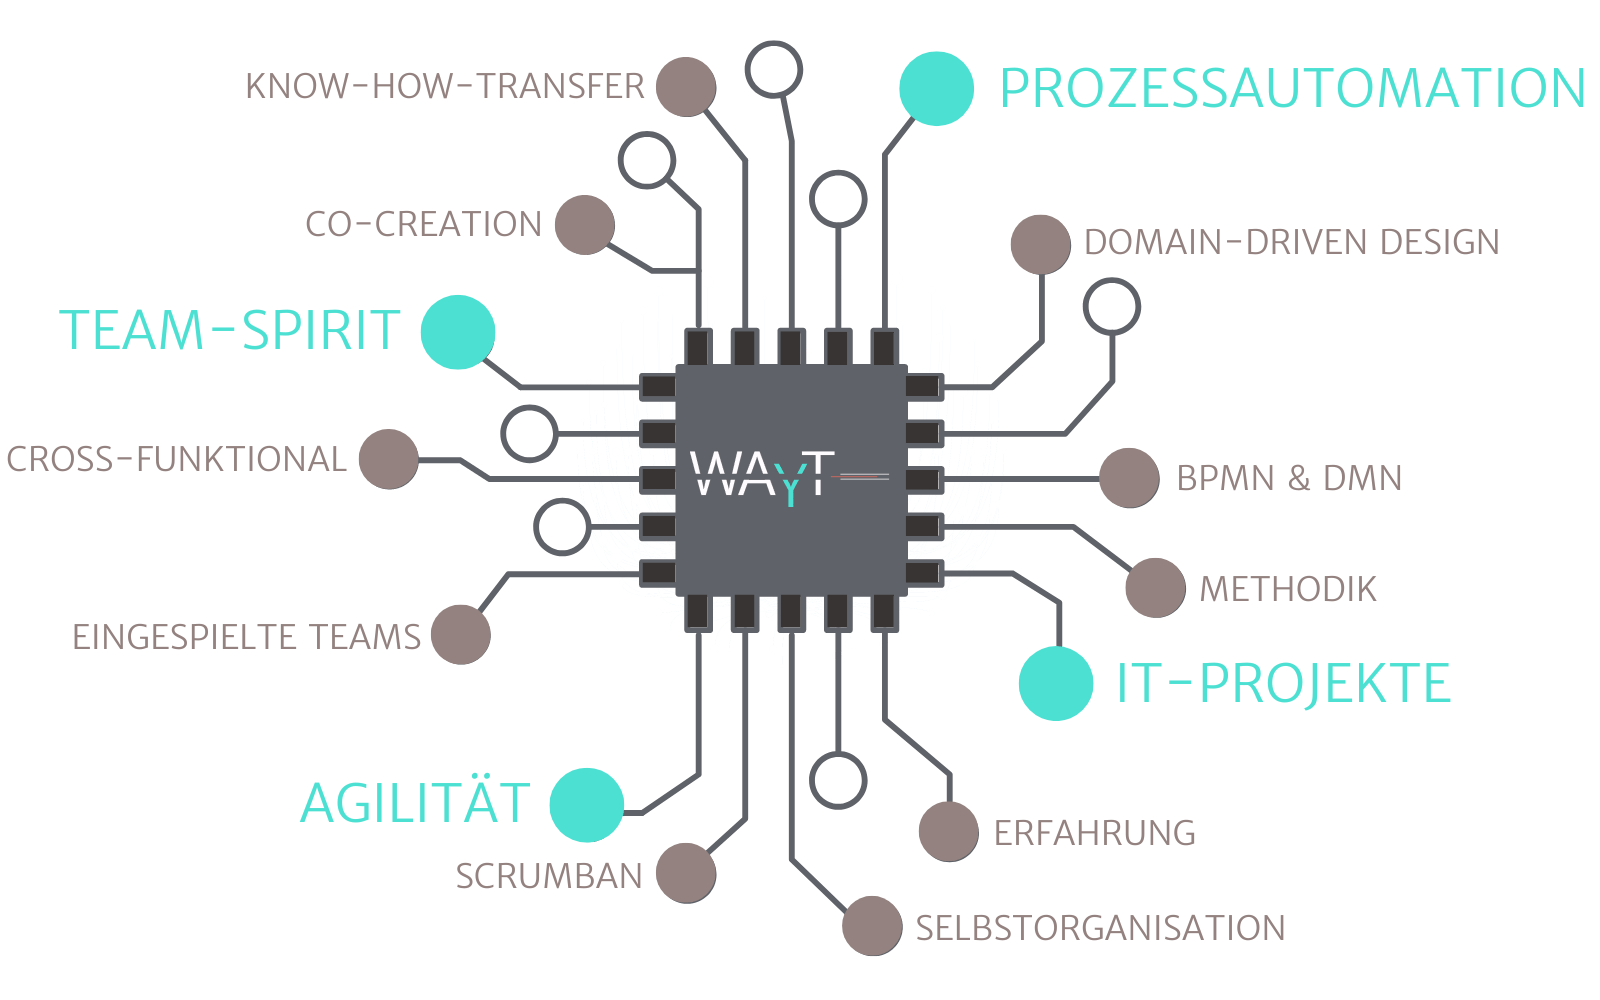 Die Kernkompetenzen von WAYT: Prozessautomation, Domain-Driven Design, BPMN& DMB, Methodik, IT-Projekte, Erfahrung, Selbstorganisation, SCRUMBAN, Agilität, eingespielte Teams, Corss-Funktional, Team-SPirit, Co-Creation, Know-how-Transfer